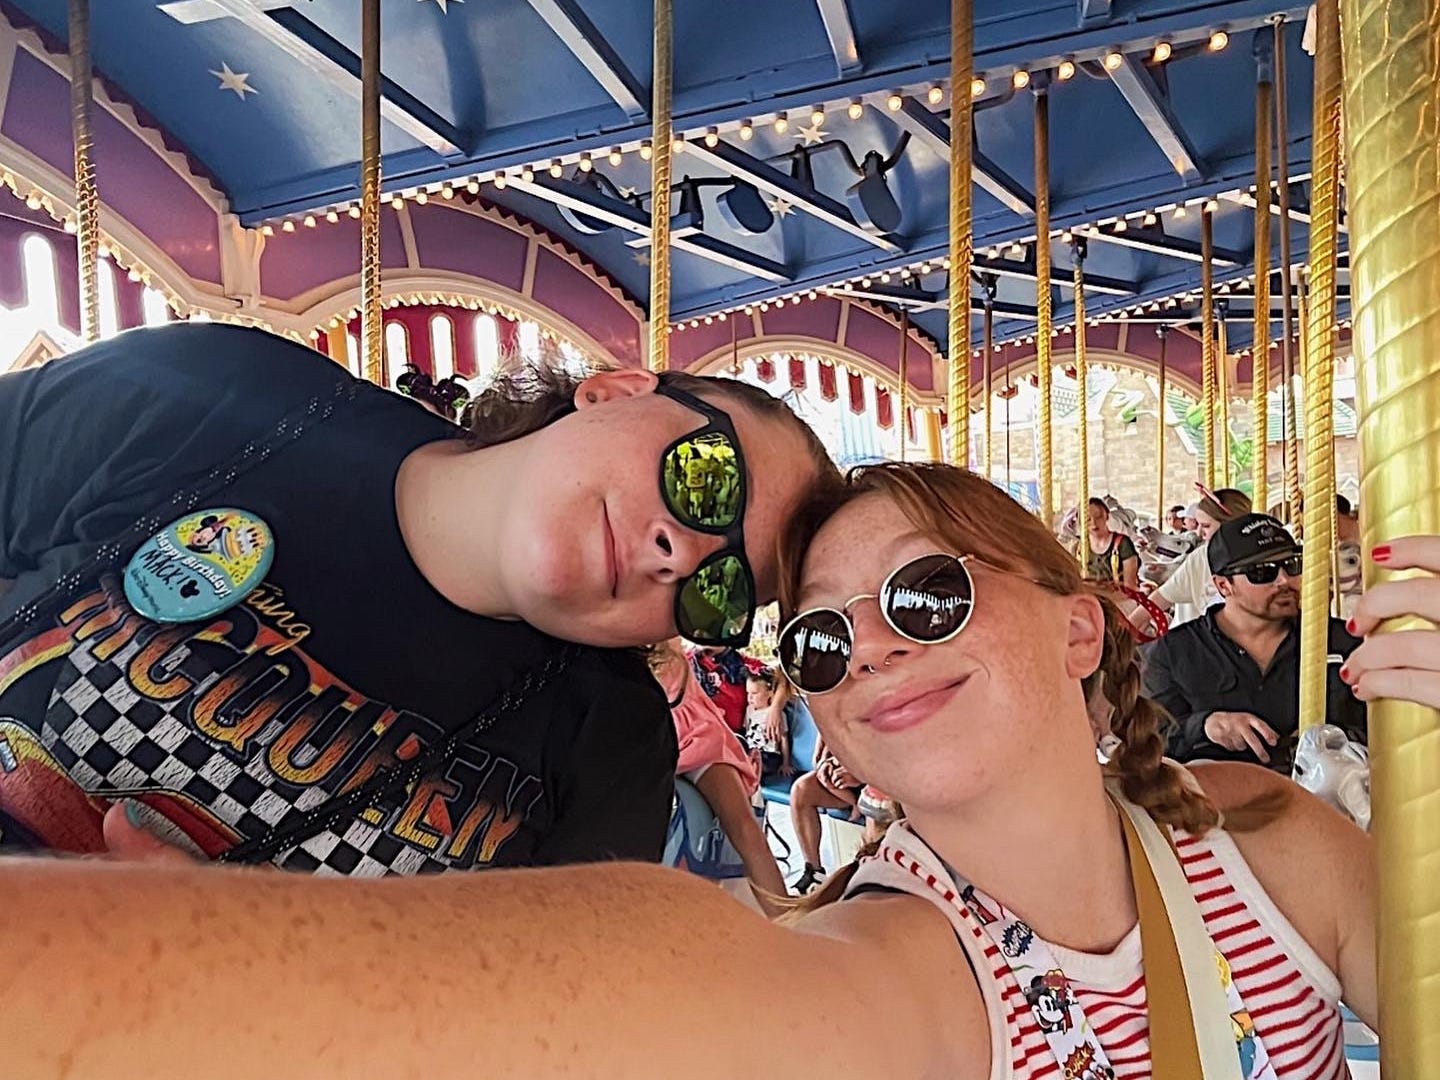 Jordan und ihr Partner posieren für ein Foto auf dem Karossell in Disney World